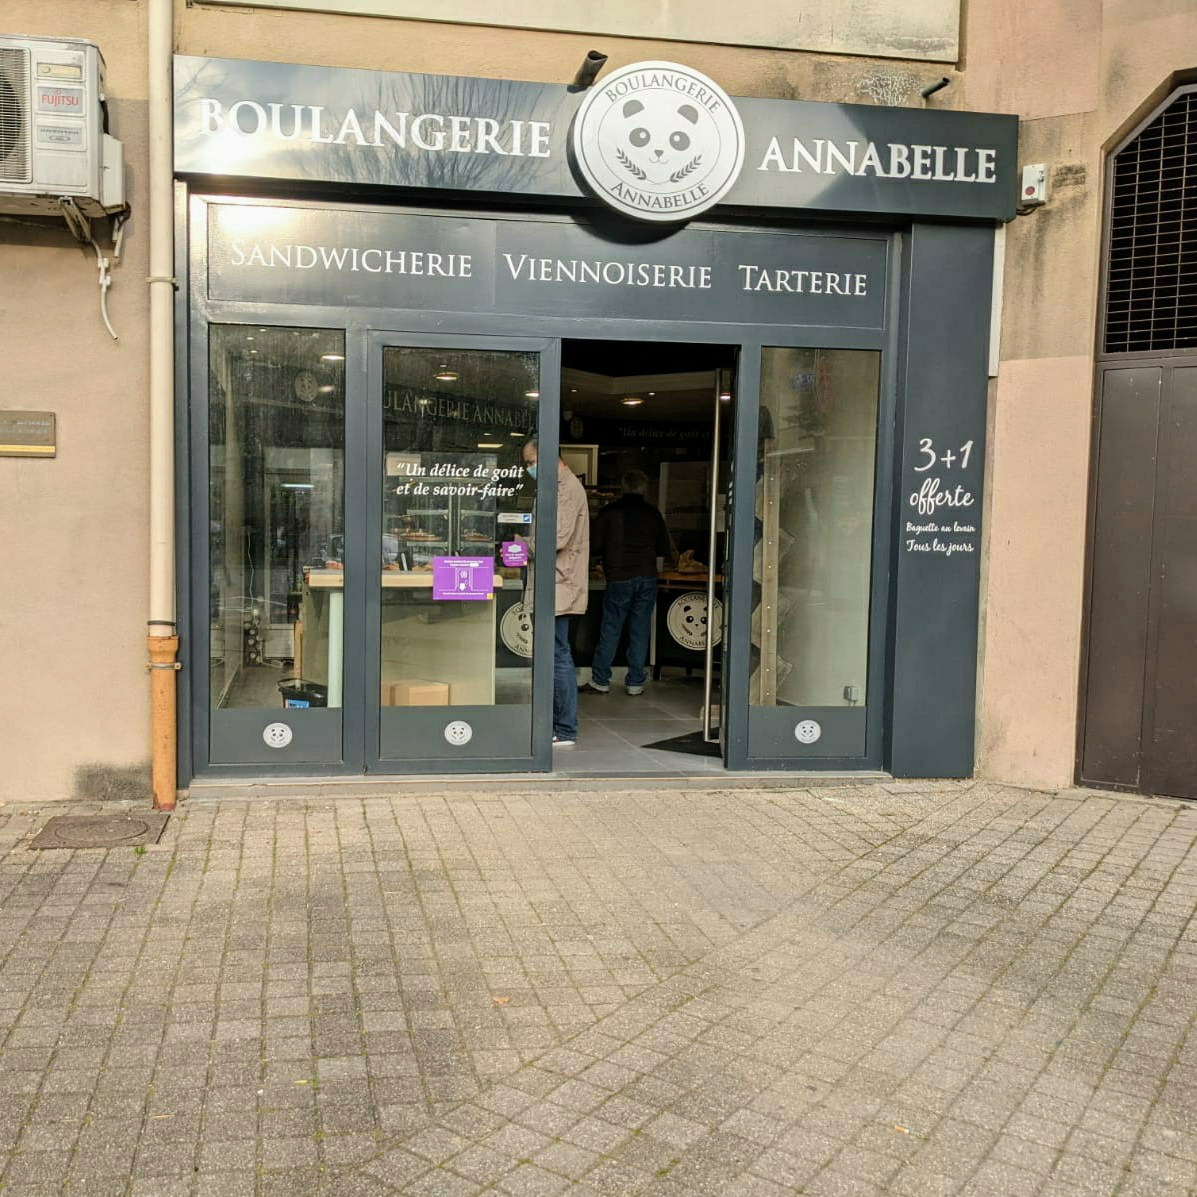 Boulangerie Annabelle